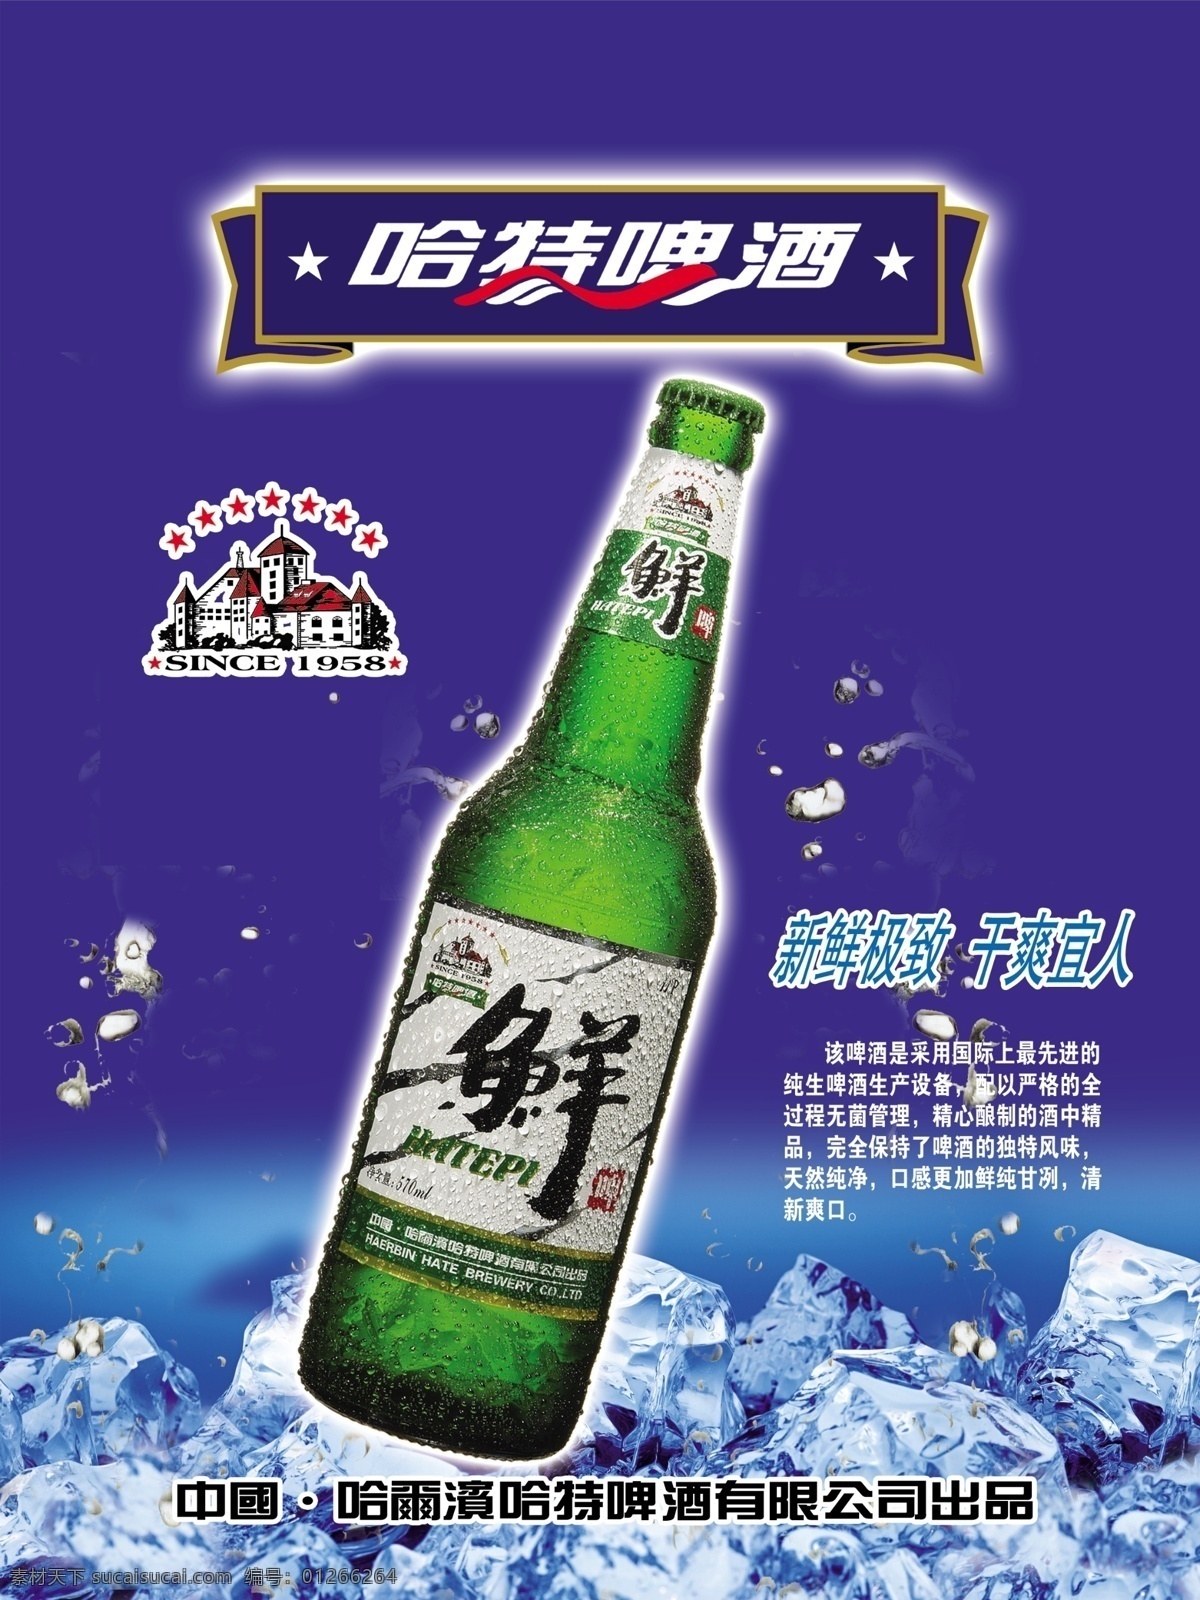 啤酒 冰块 广告设计模板 酒 蓝色 啤酒素材下载 鲜 啤酒模板下载 哈特 海报 源文件 矢量图 日常生活